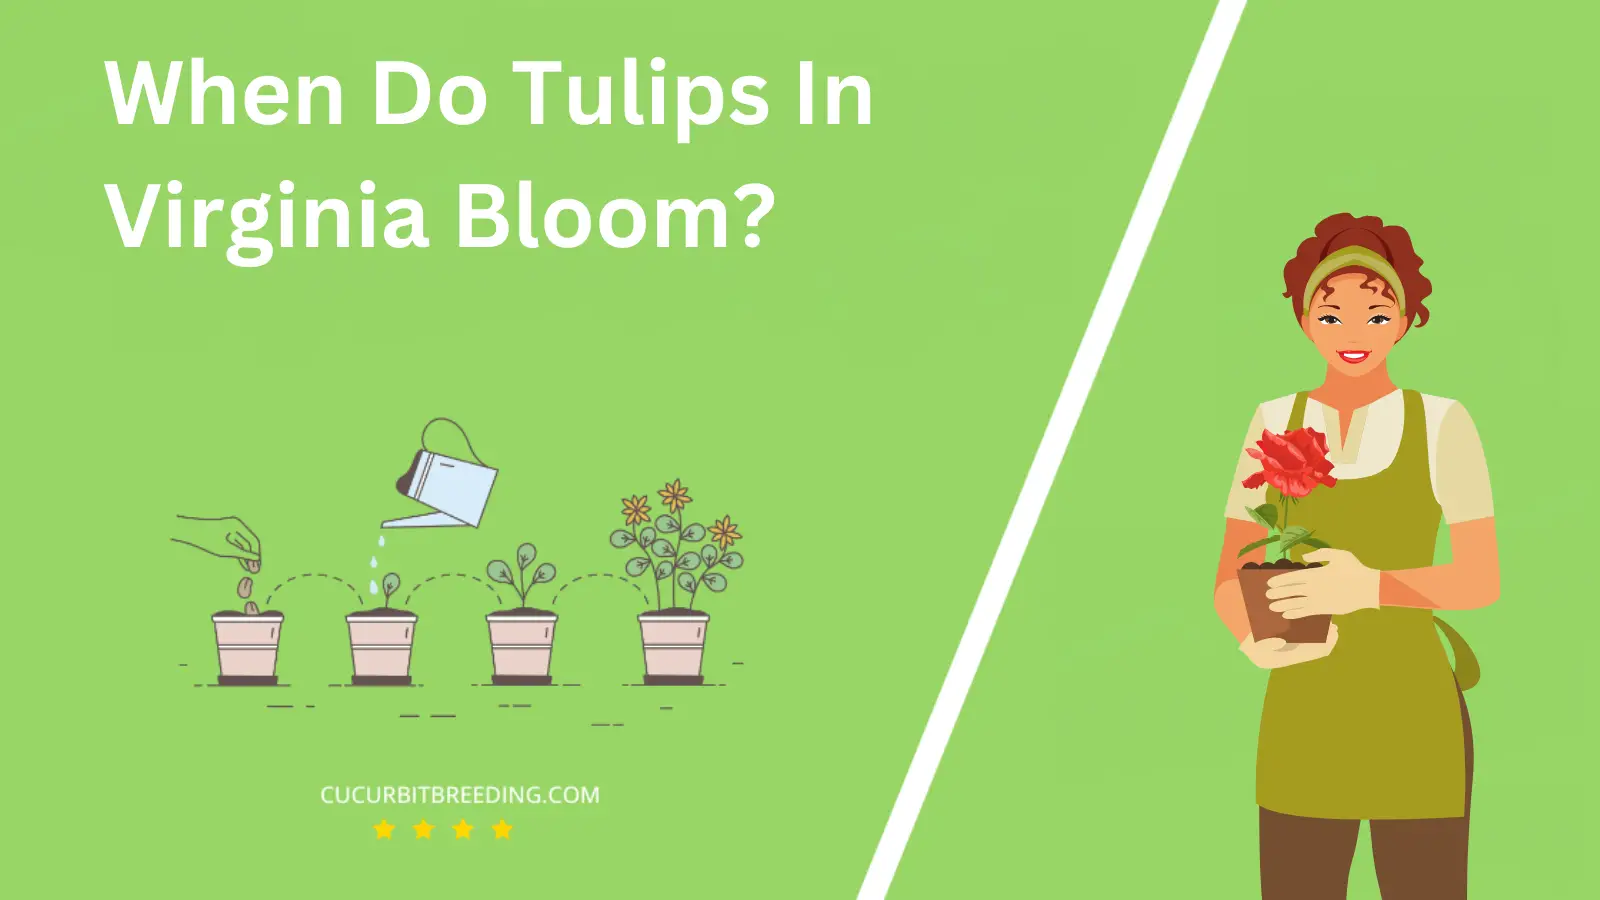 When Do Tulips In Virginia Bloom?